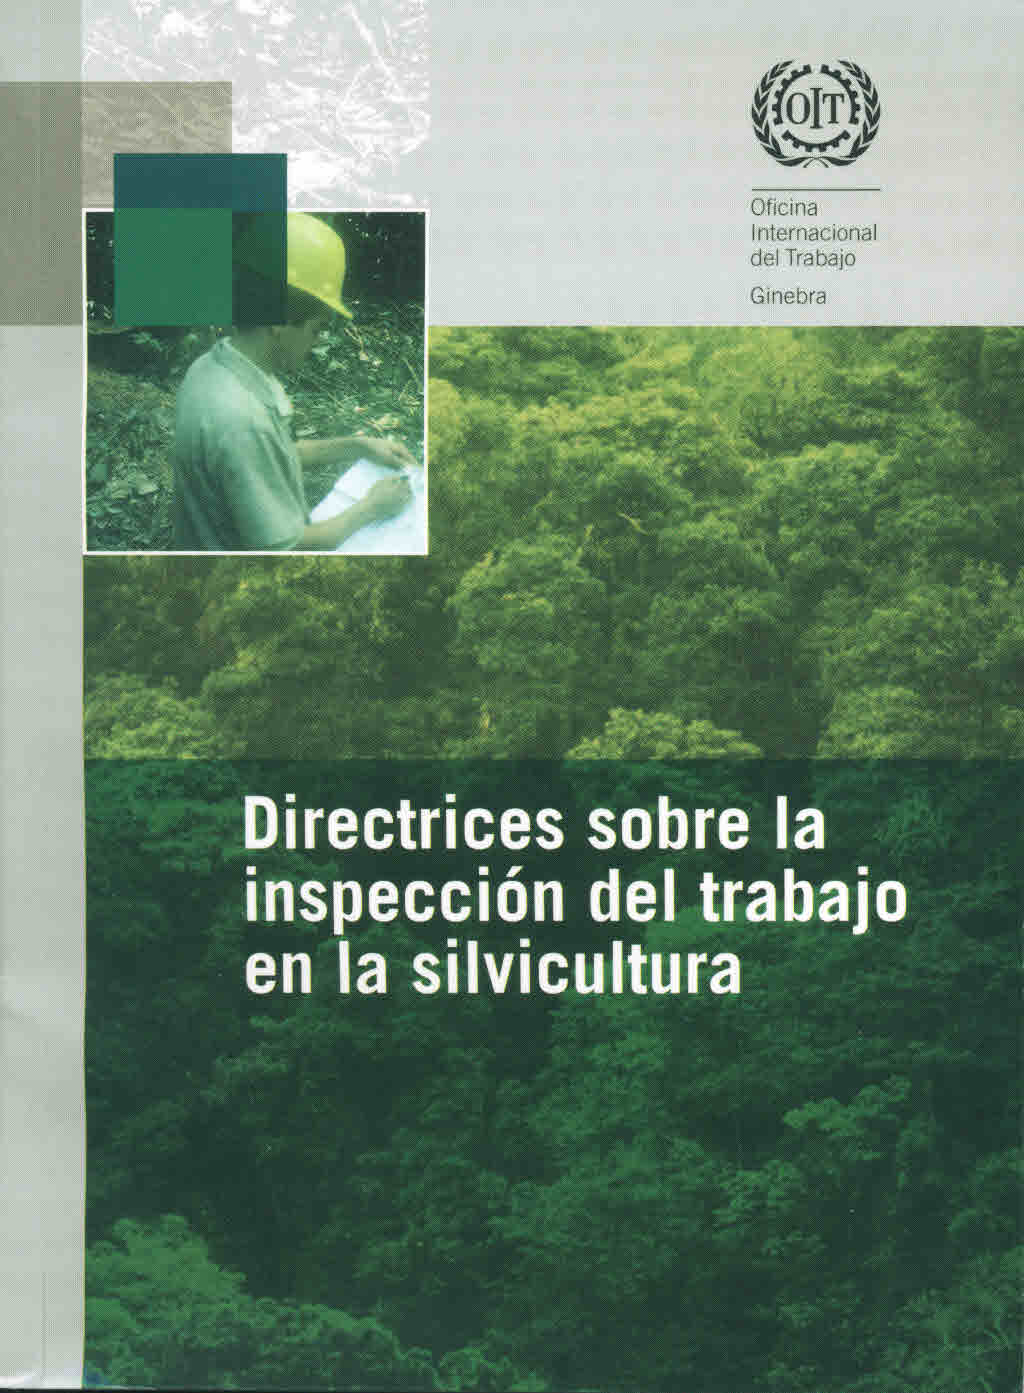 Directrices sobre la inspección del trabajo en la silvicultura